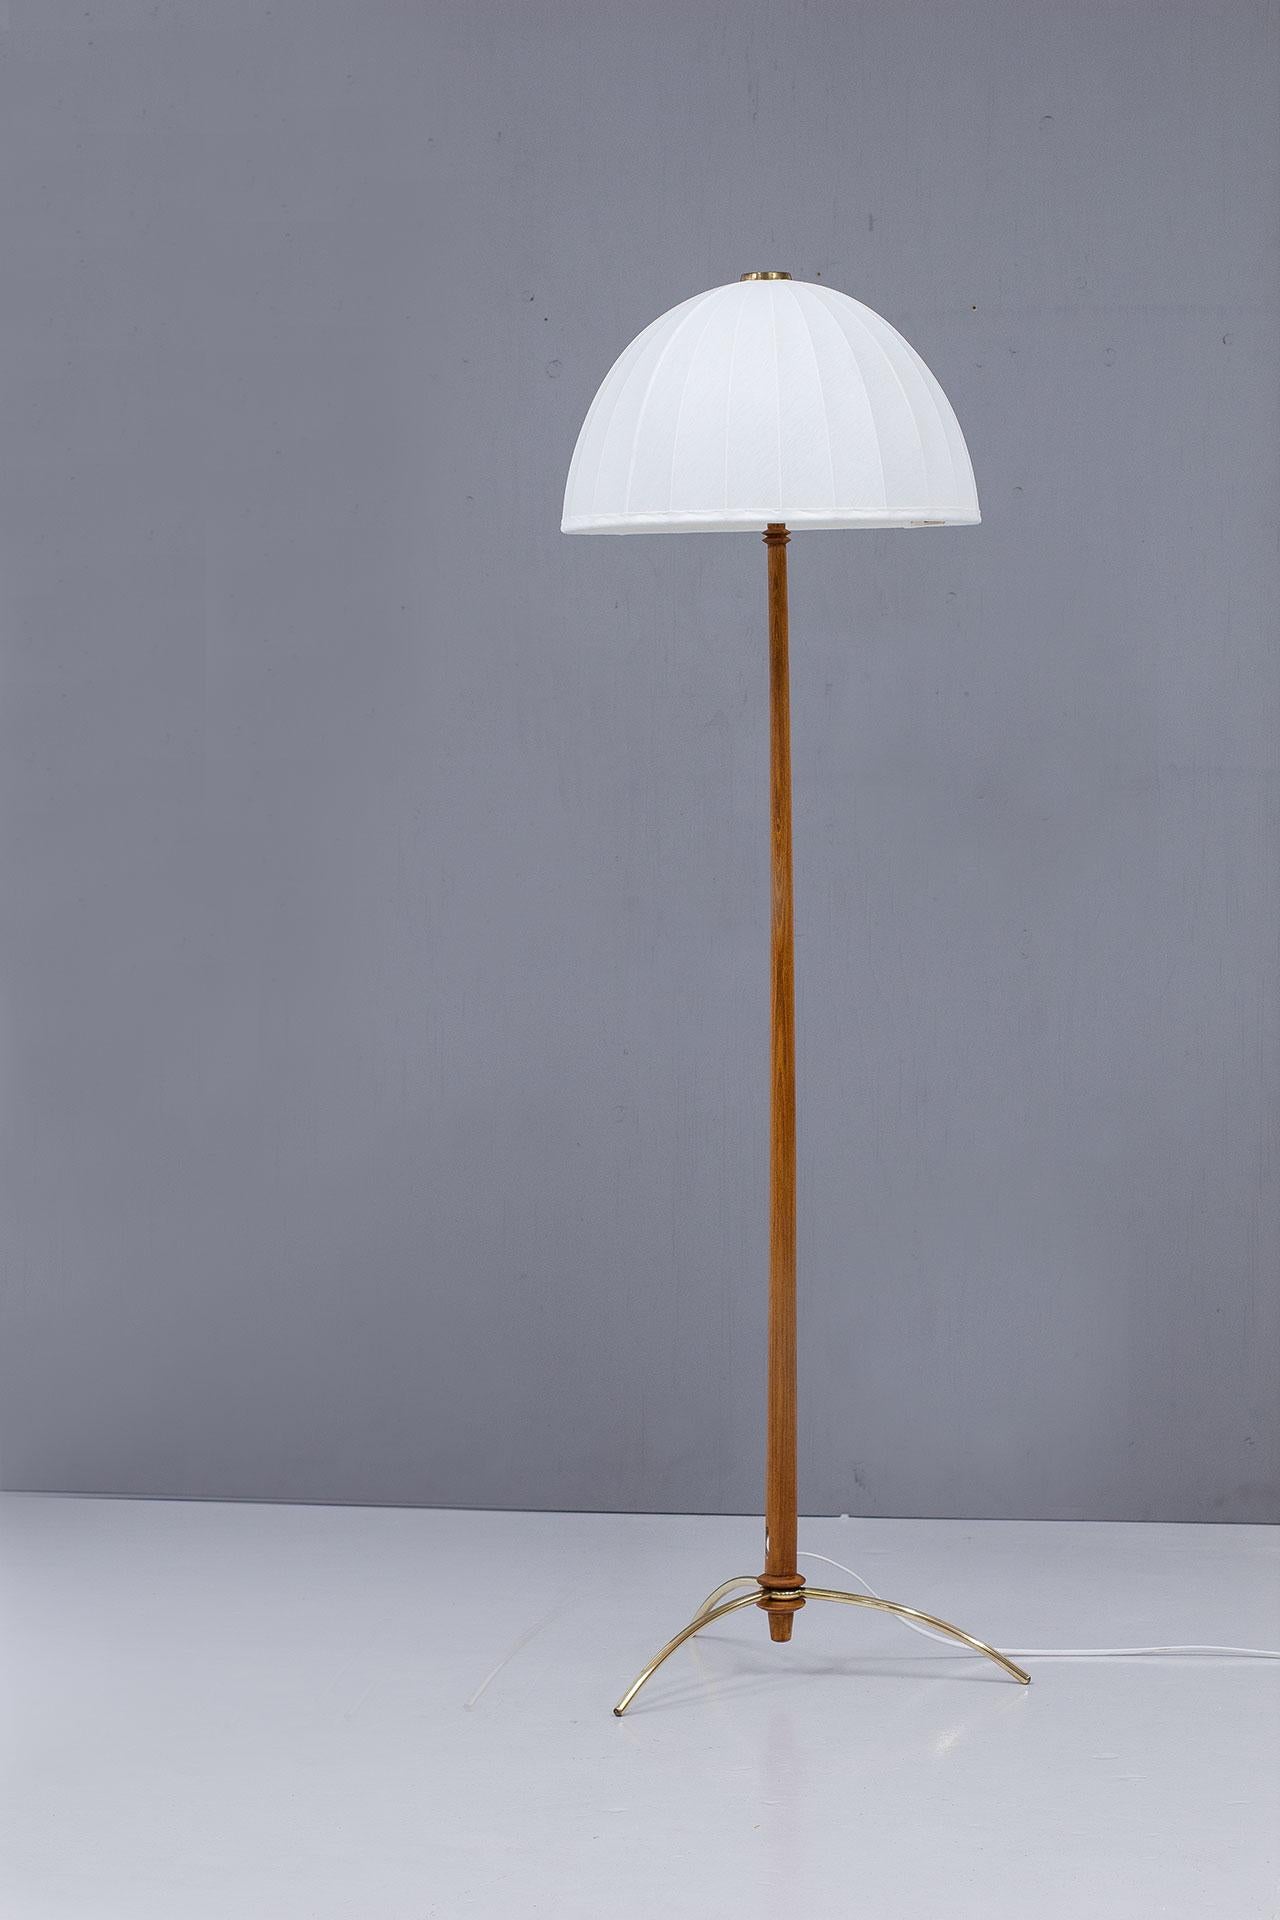 Vintage Stehleuchte, Modell G45, entworfen und hergestellt von Hans-Agne Jakobsson in Schweden in den 1950er Jahren. Die Lampe hat einen Stiel aus gebeizter Buche und einen dreibeinigen Sockel aus Messing. Sie wird mit ihrem originalen Lampenschirm